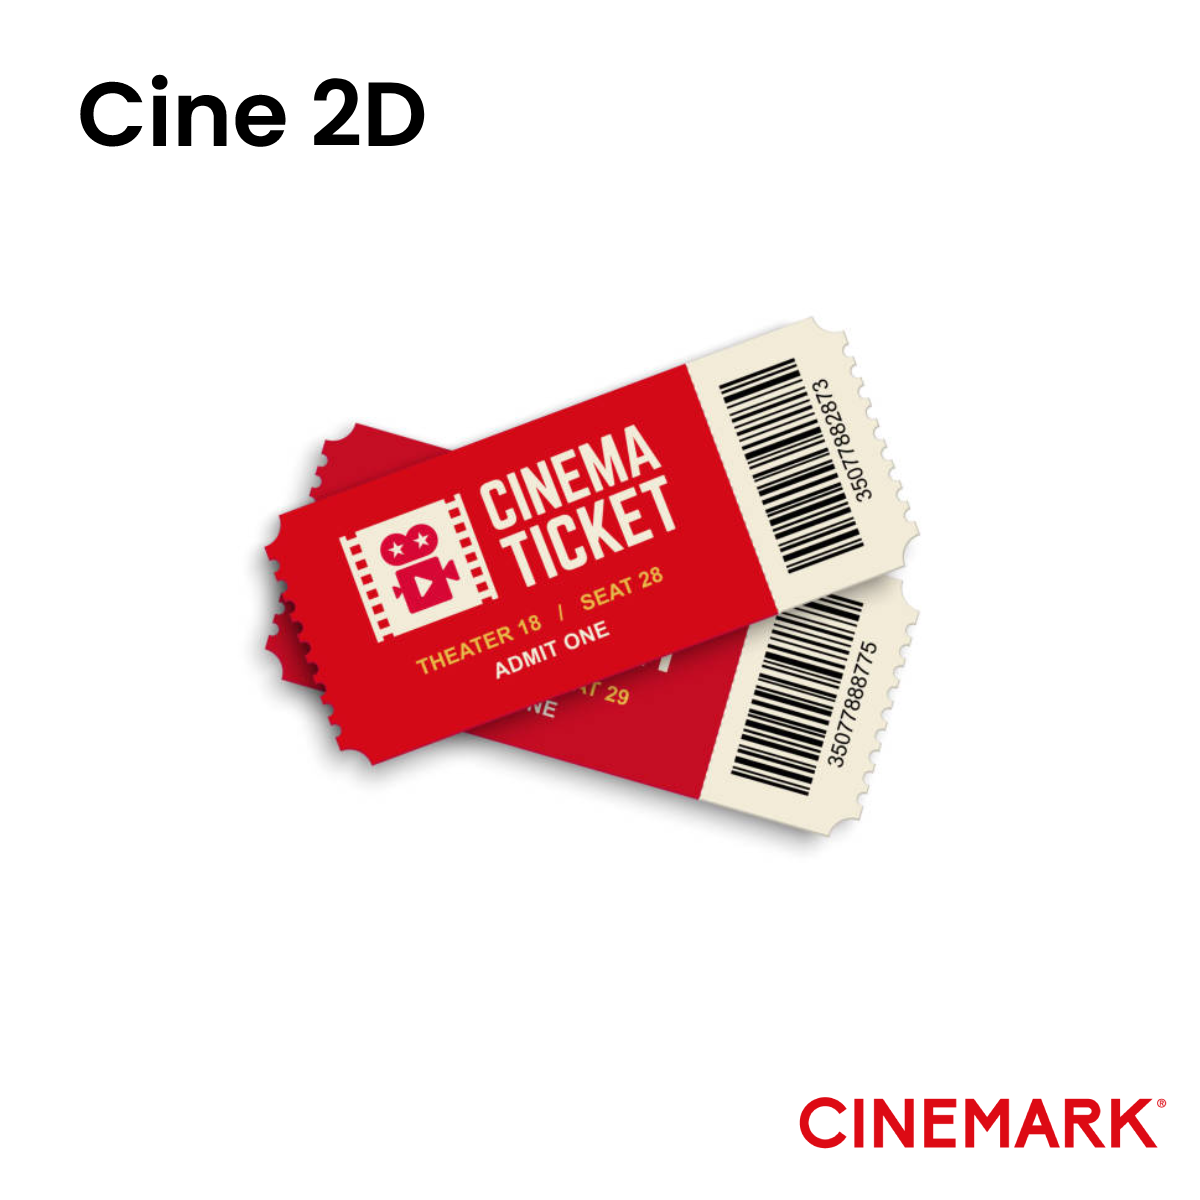 Bonos Cine 2D - Cinemark